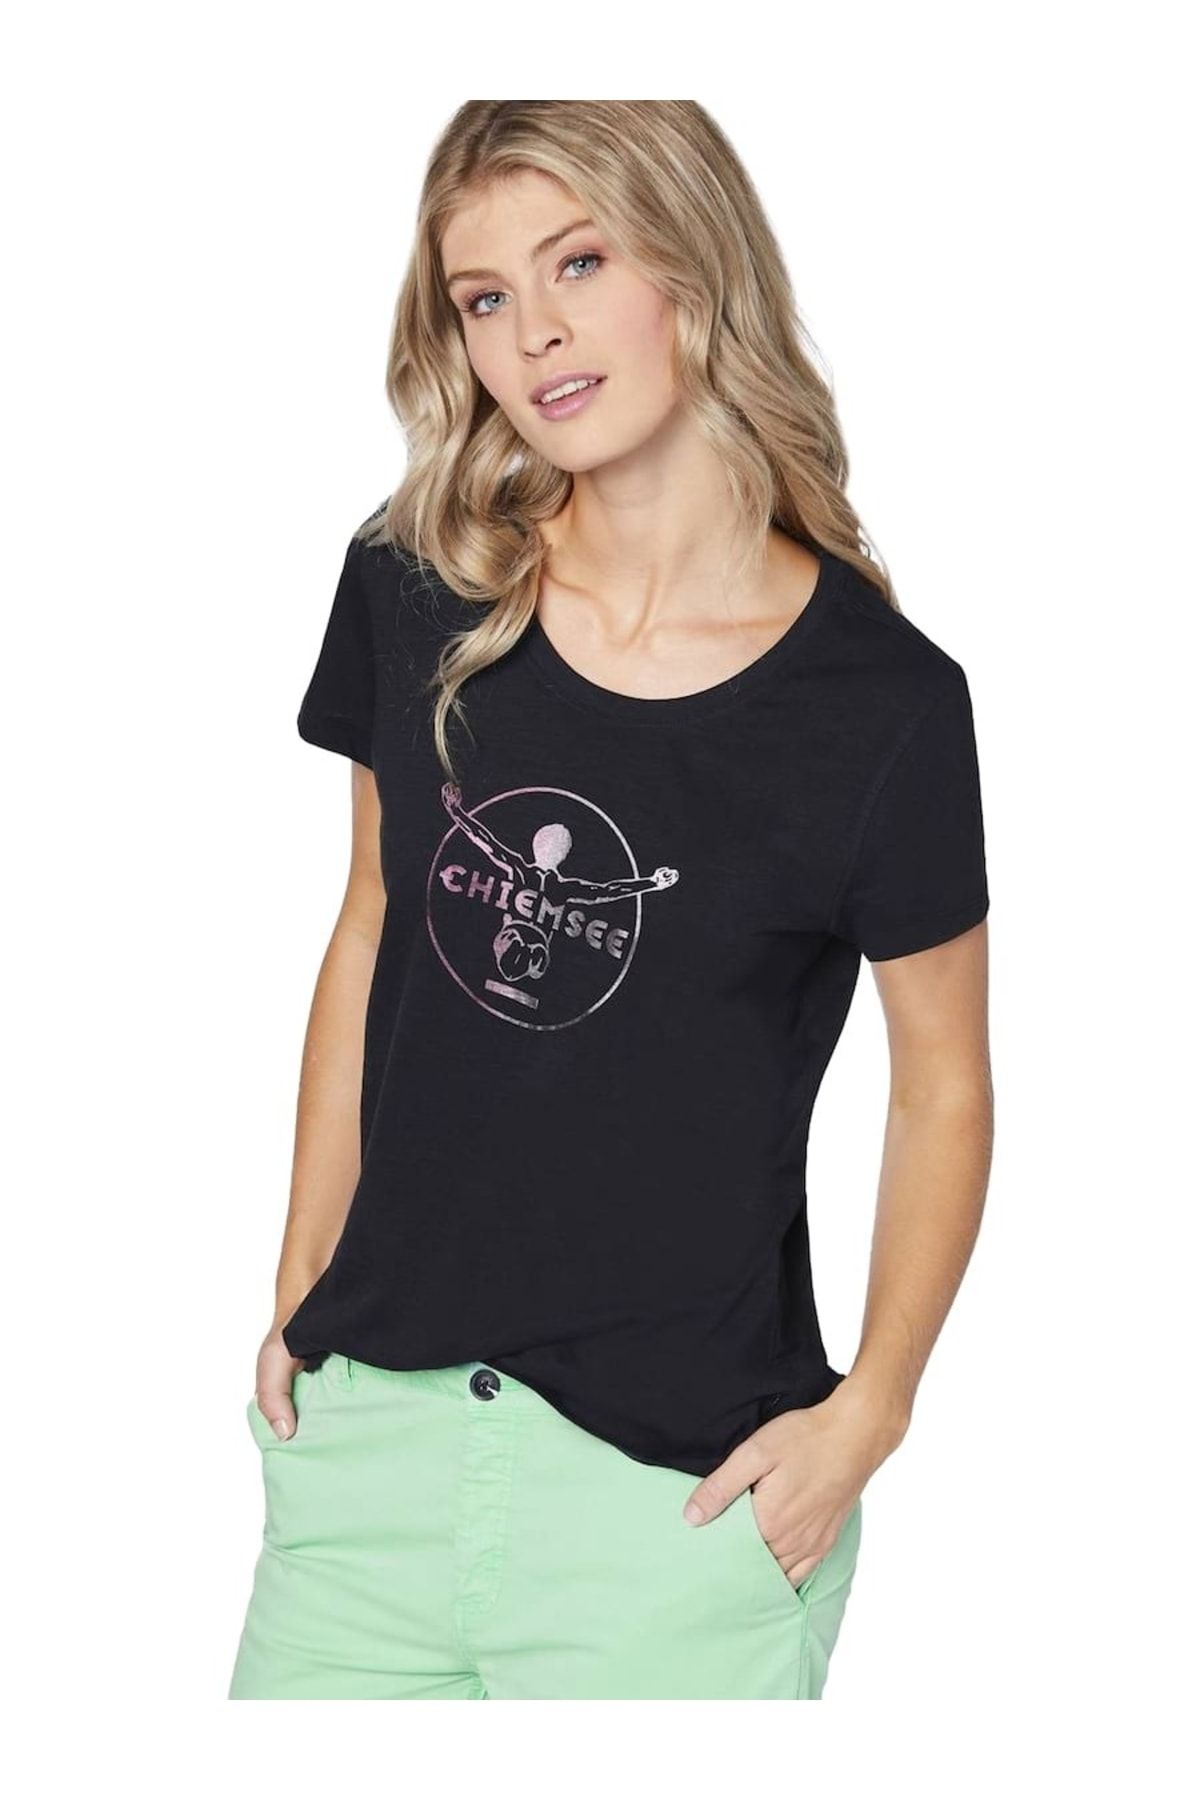 Chiemsee Damen T-Shirt - Taormina, Shirt, Baumwolle, Rundhals, Logo, kurz,  einfarbig - Trendyol